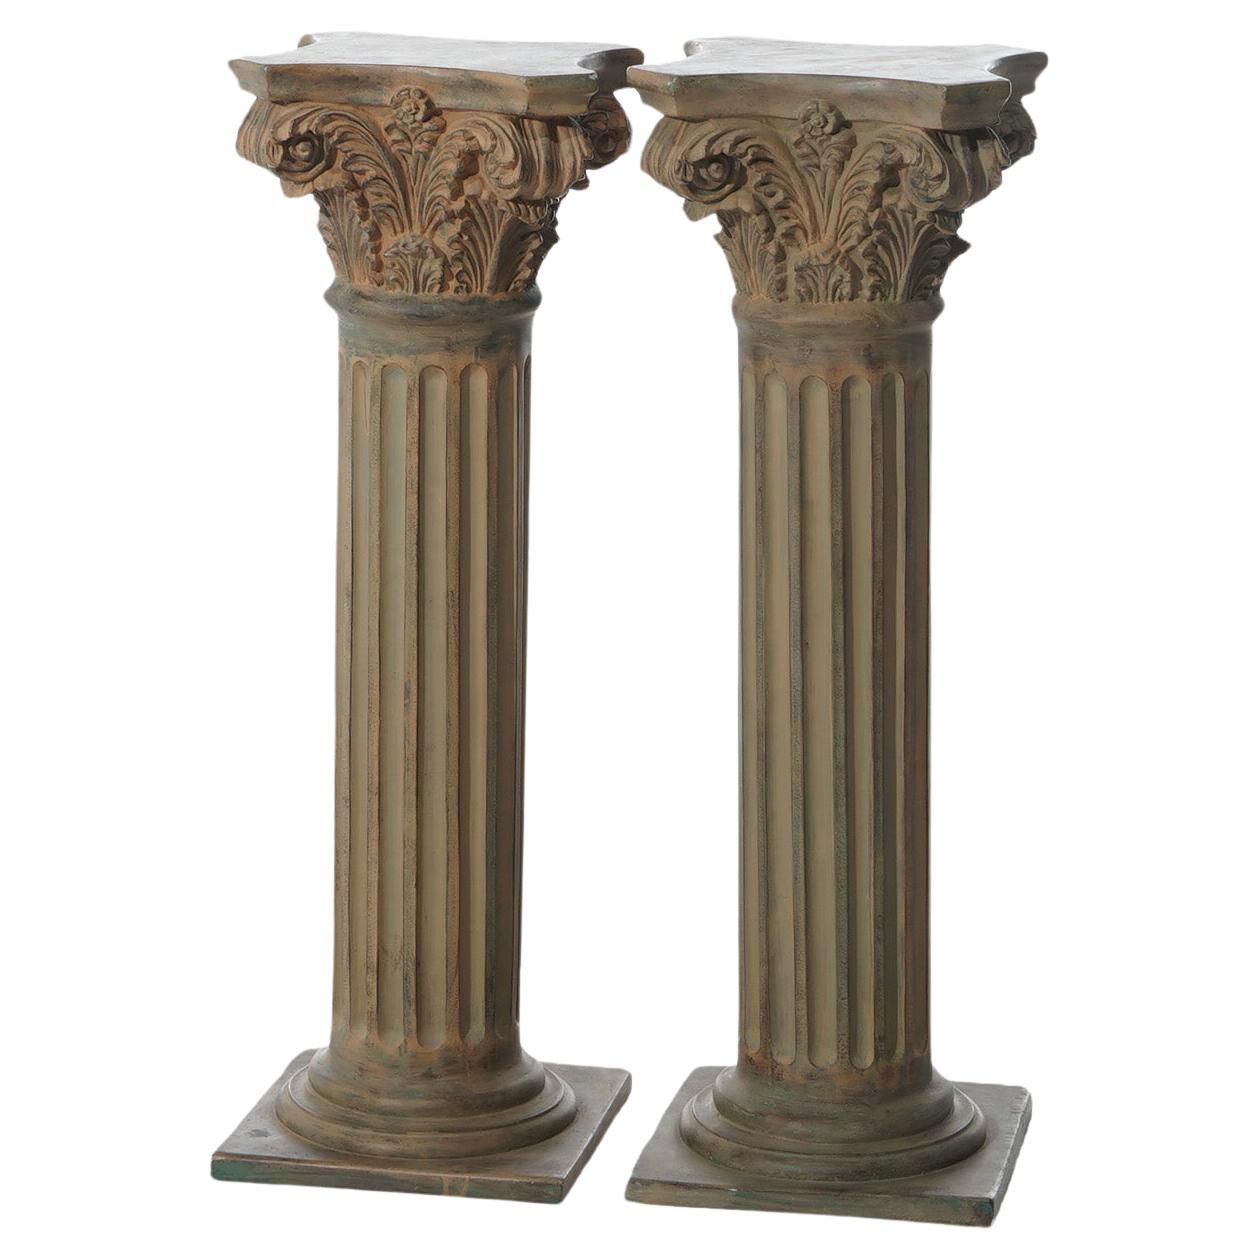 Pair Neoclassical Corinthian Column Form Composite Sculpture Pedestals 20thC For Sale